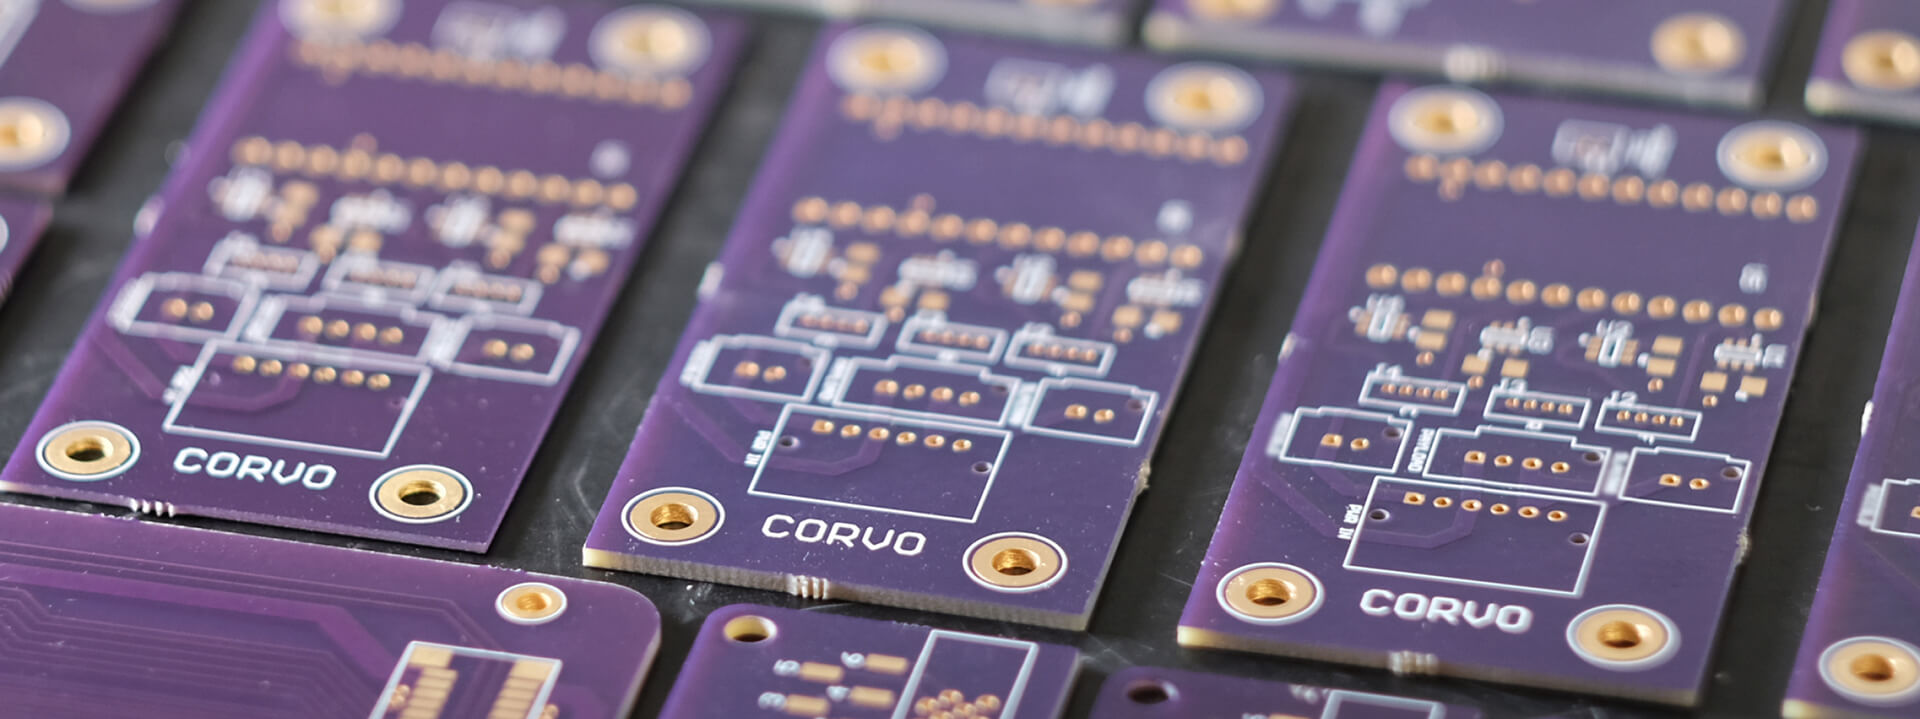 Corvo Drone Circuit Board Component